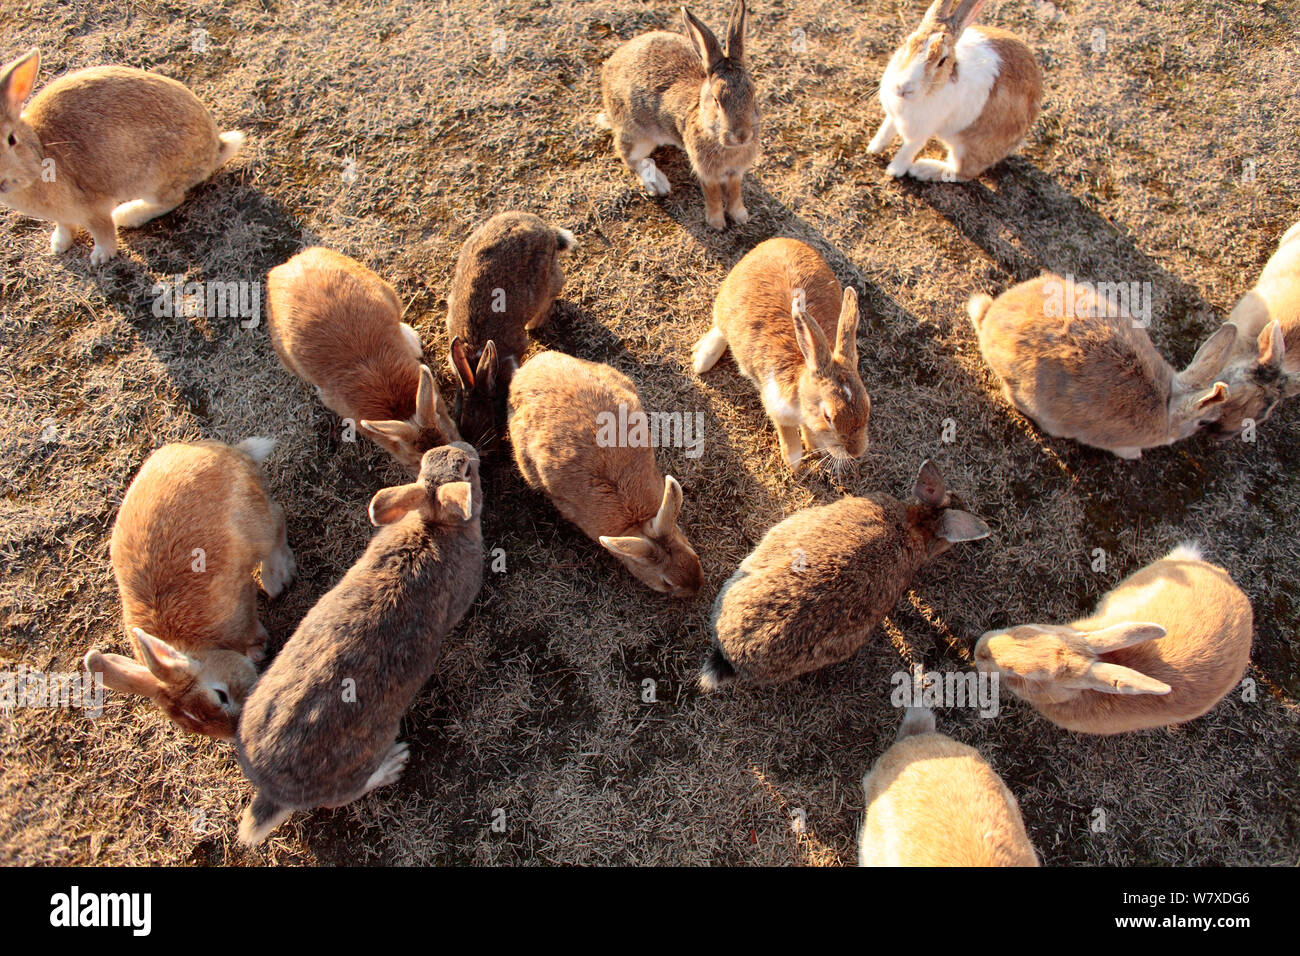 Les sauvages lapin (Oryctolagus cuniculus) rassemblement du groupe à être nourris, Okunojima Island, également connu sous le nom de Rabbit Island, Hiroshima, Japon. Banque D'Images